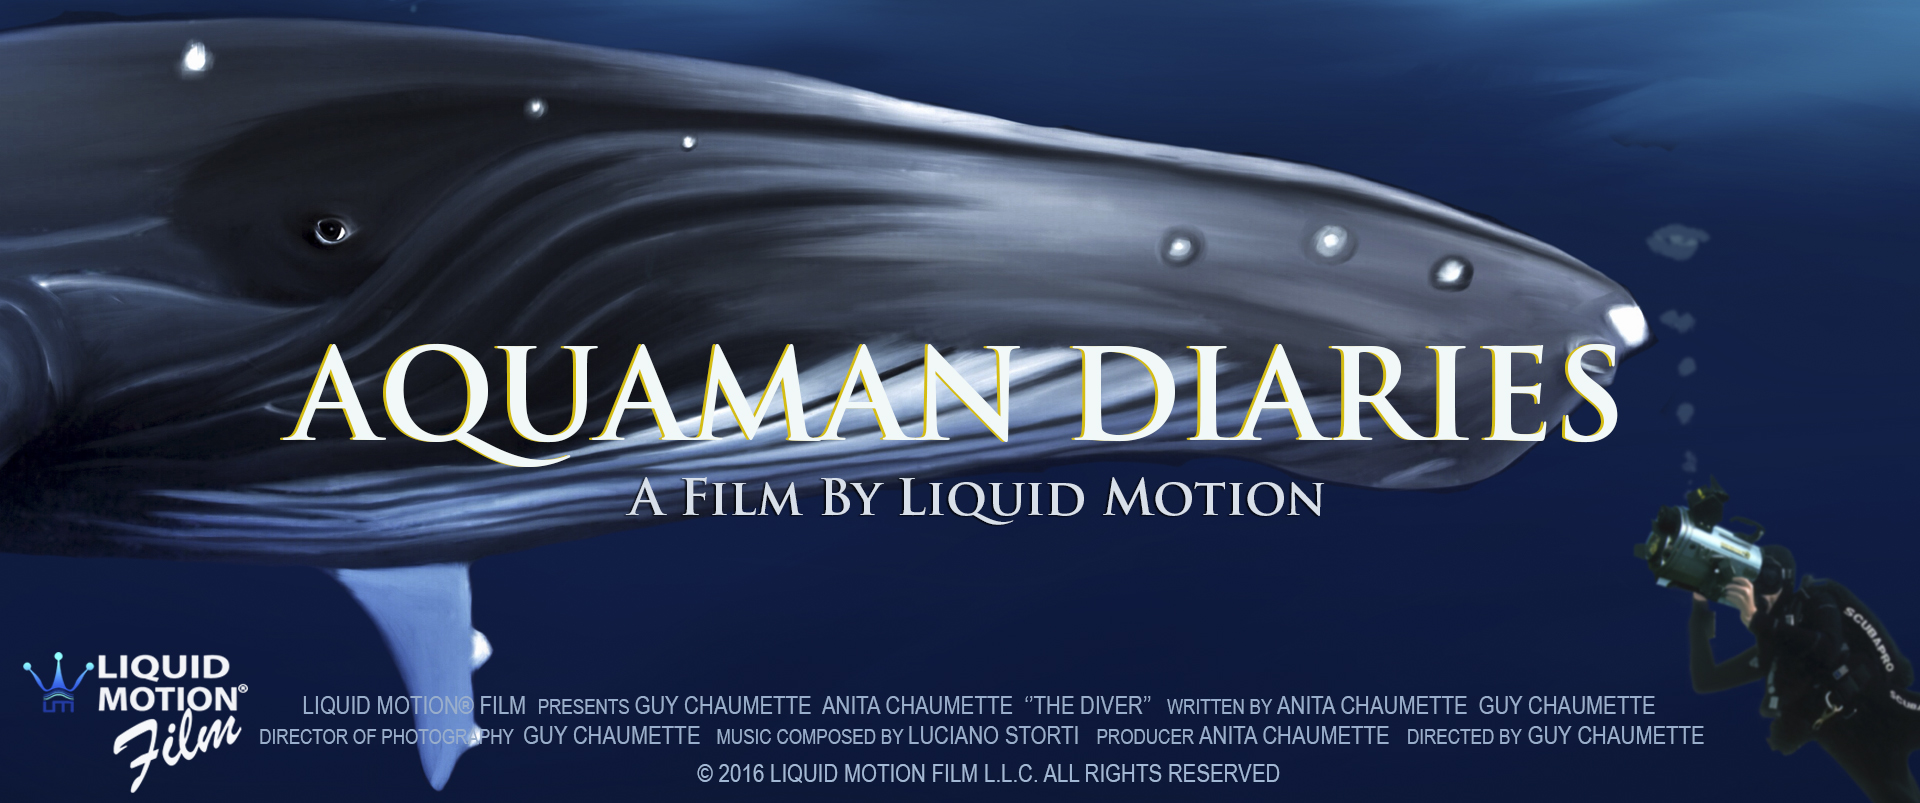 Aquaman Diaries Liquid Motion Film